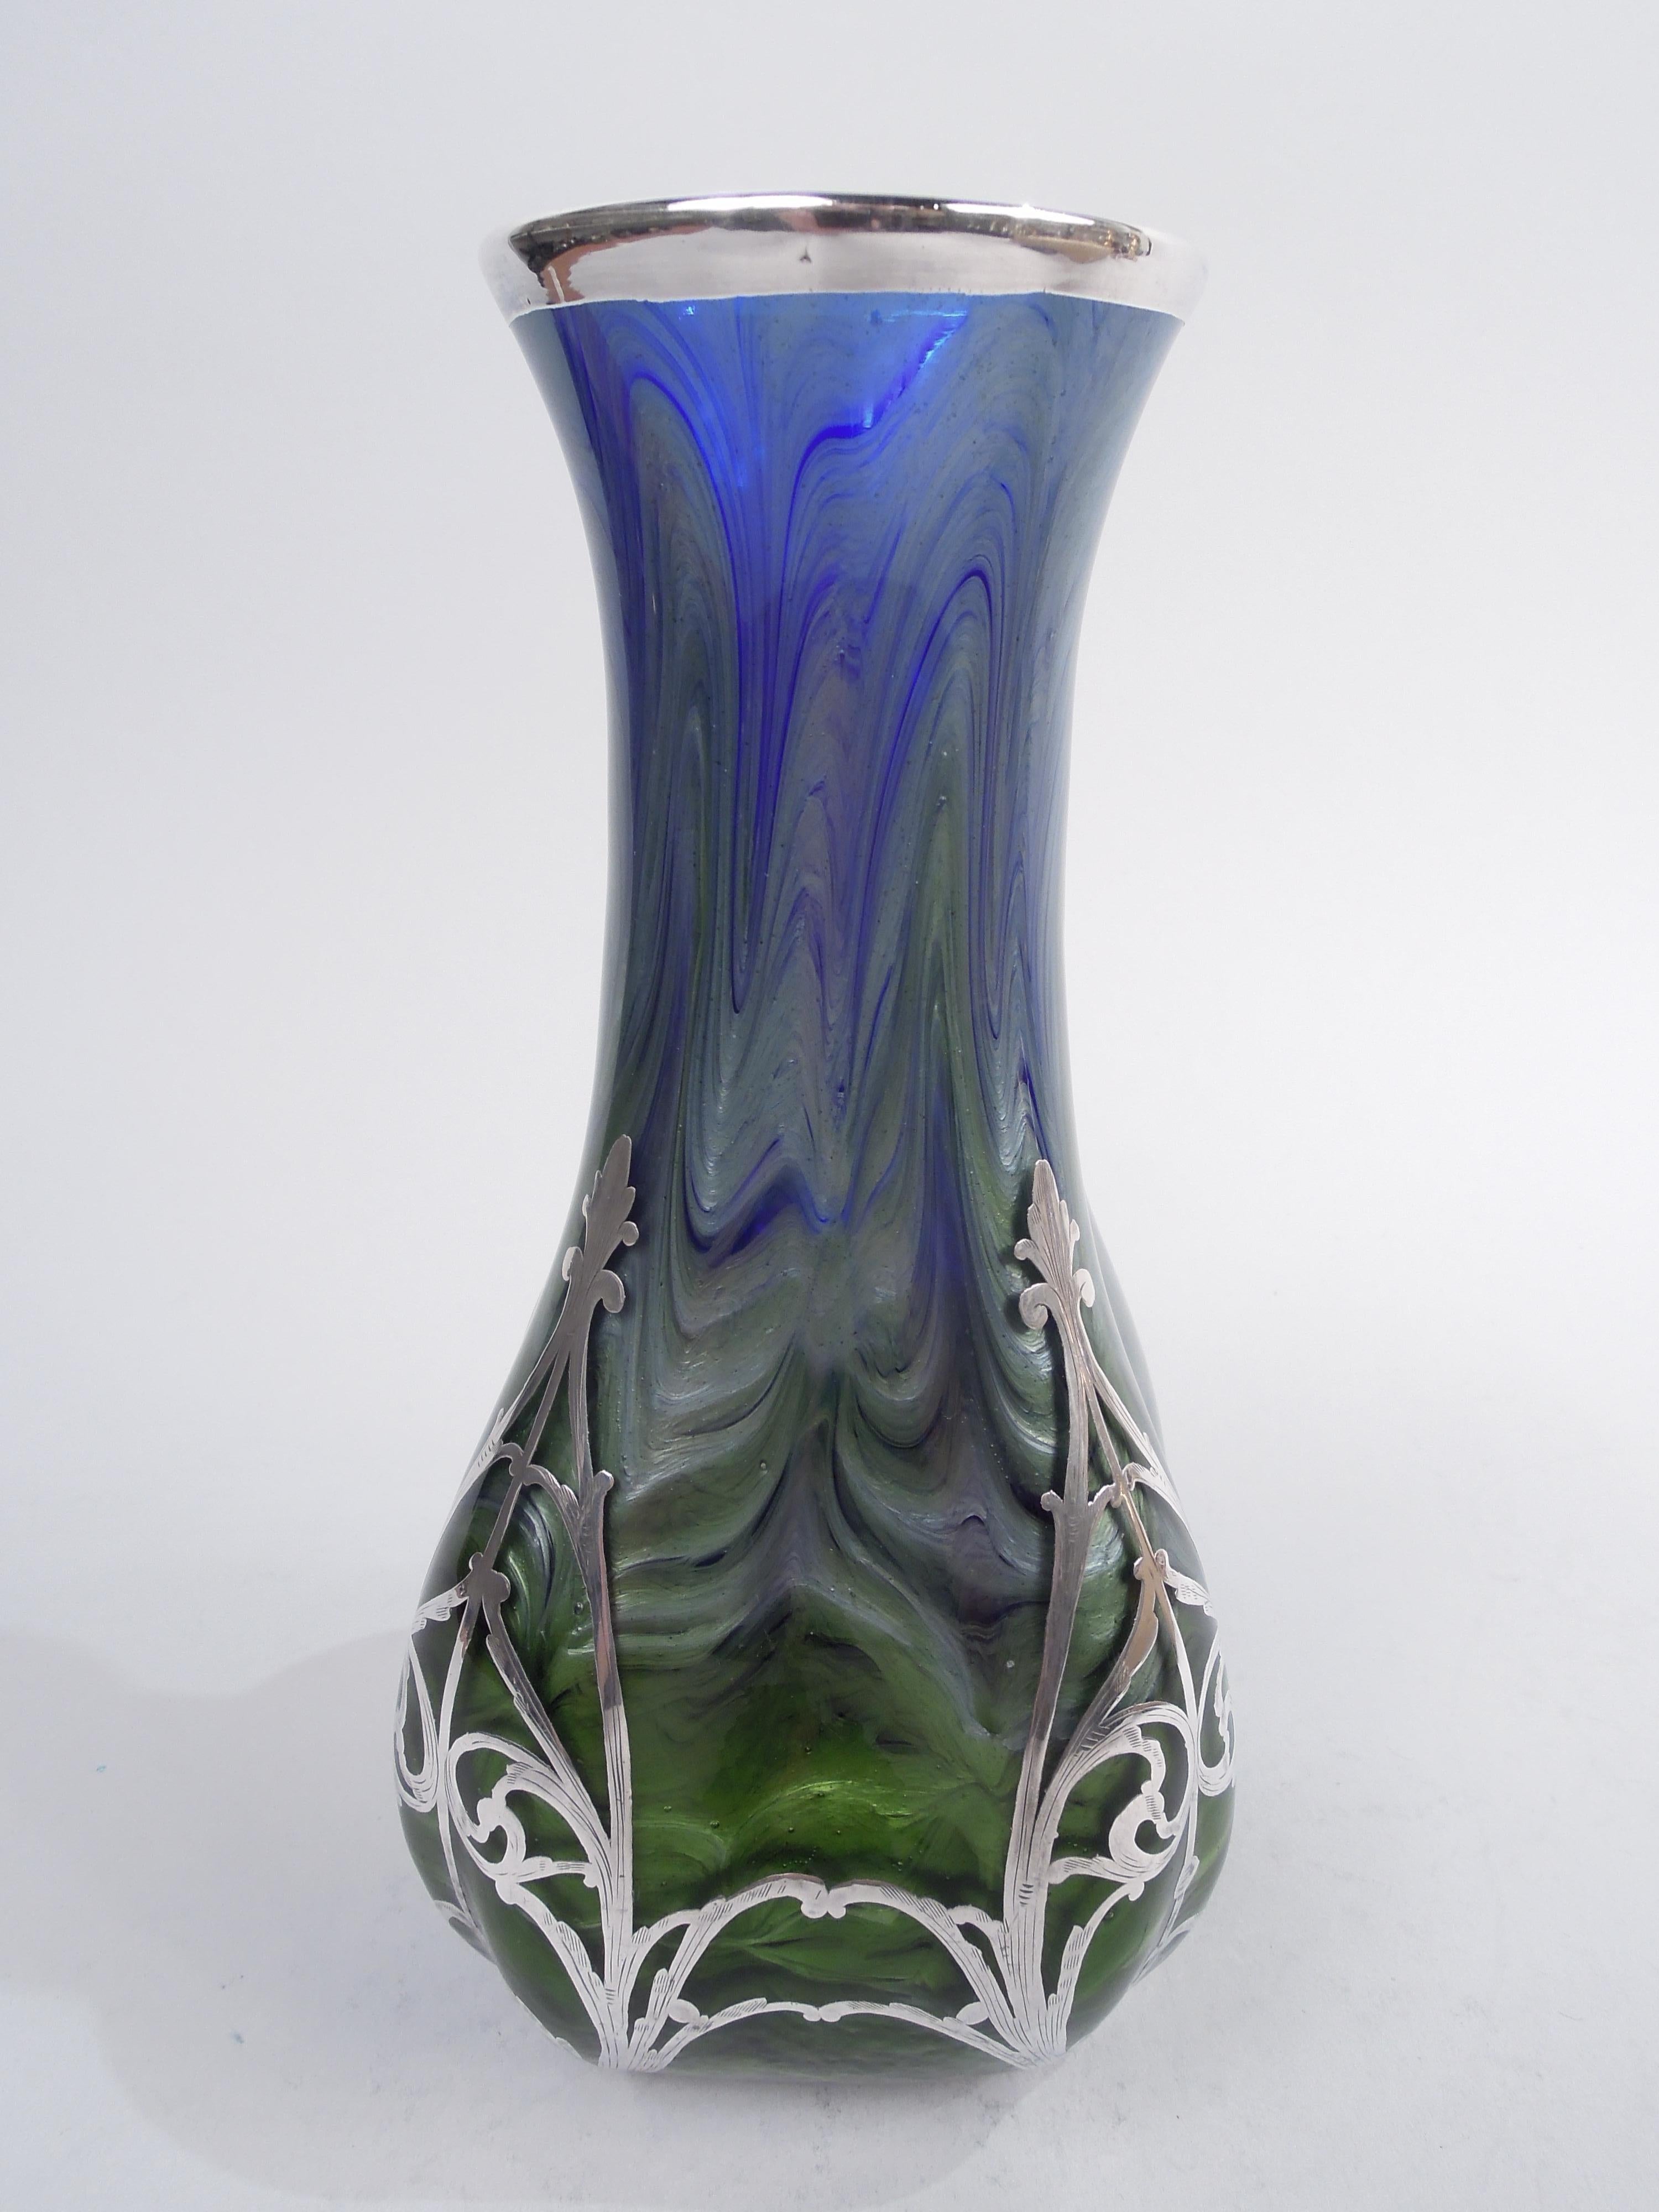 Magnifique vase en verre Titania de l'historique fabricant Loetz, avec recouvrement d'argent gravé, vers 1900. Côtés effilés vers le haut avec une bouche légèrement évasée. Côtés concaves et angles chanfreinés. Recouvrement sous forme de rinceaux